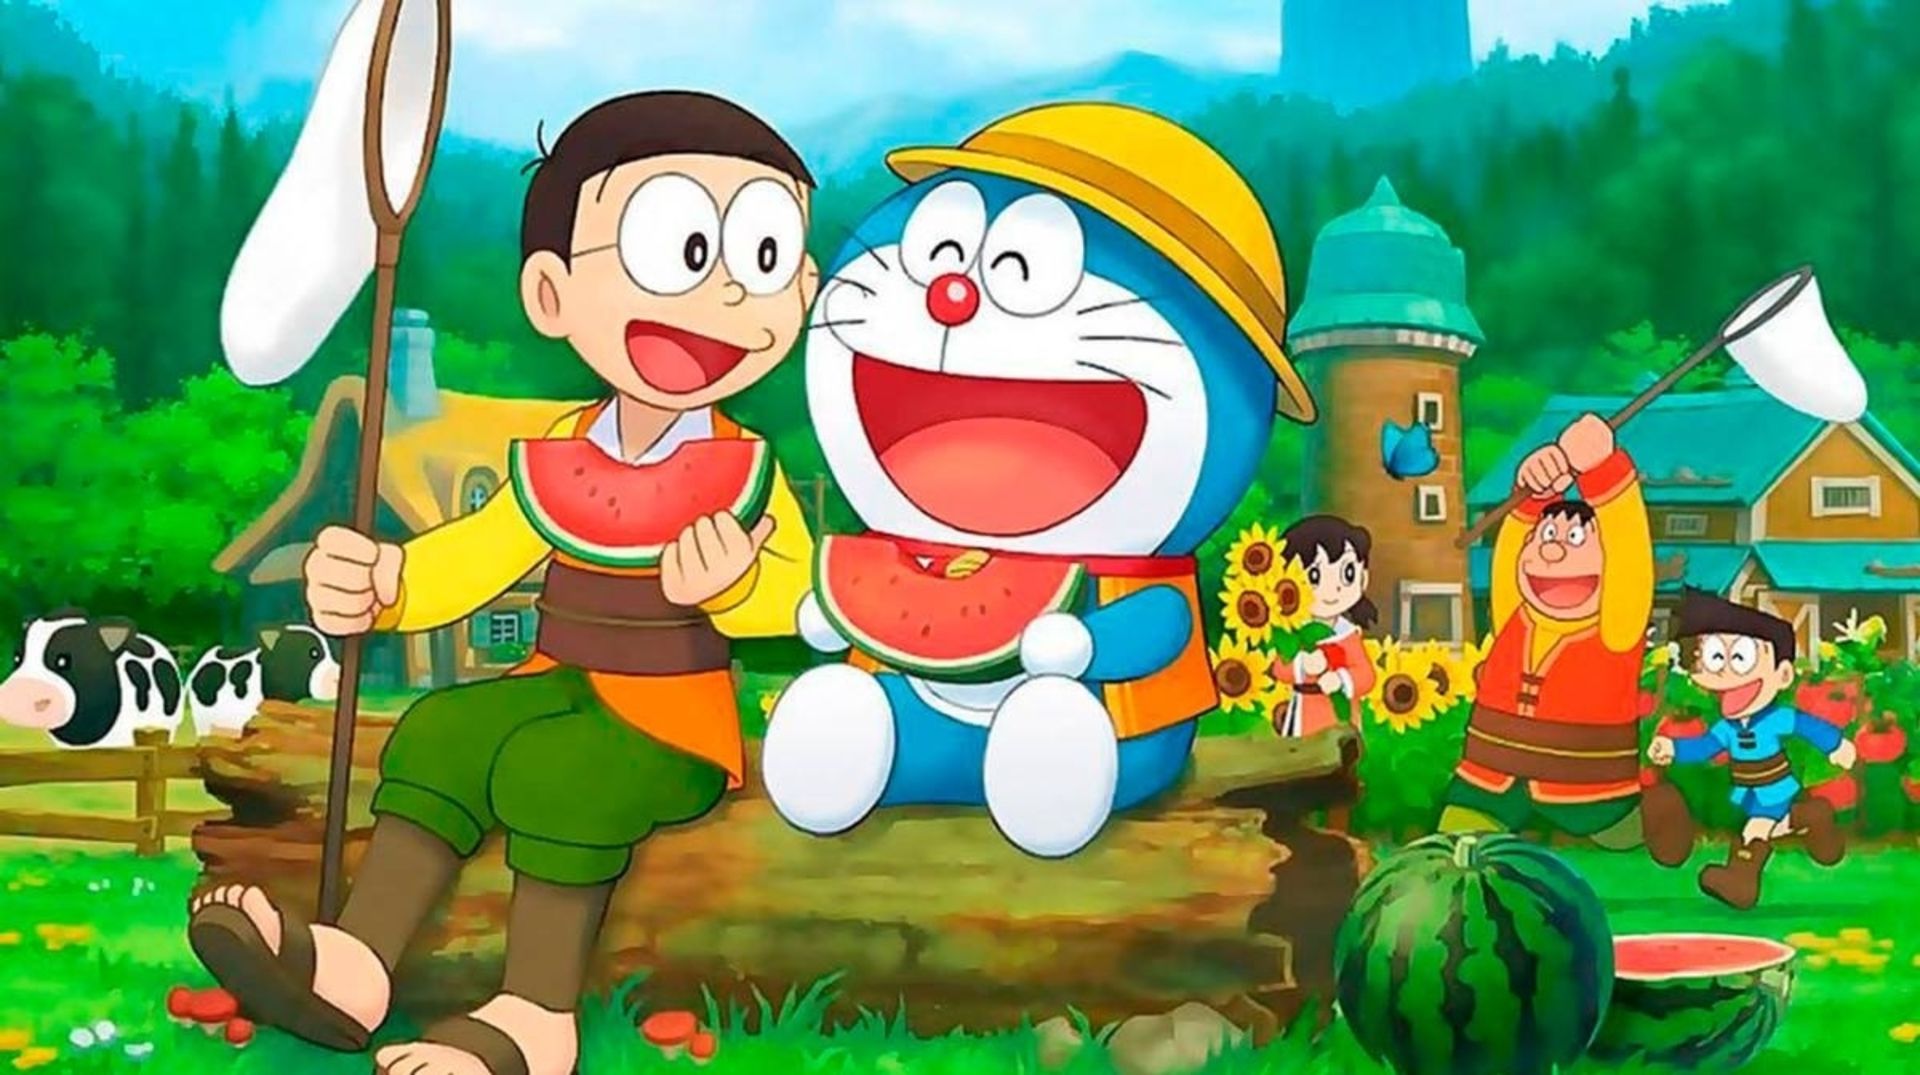 Doraemon Story